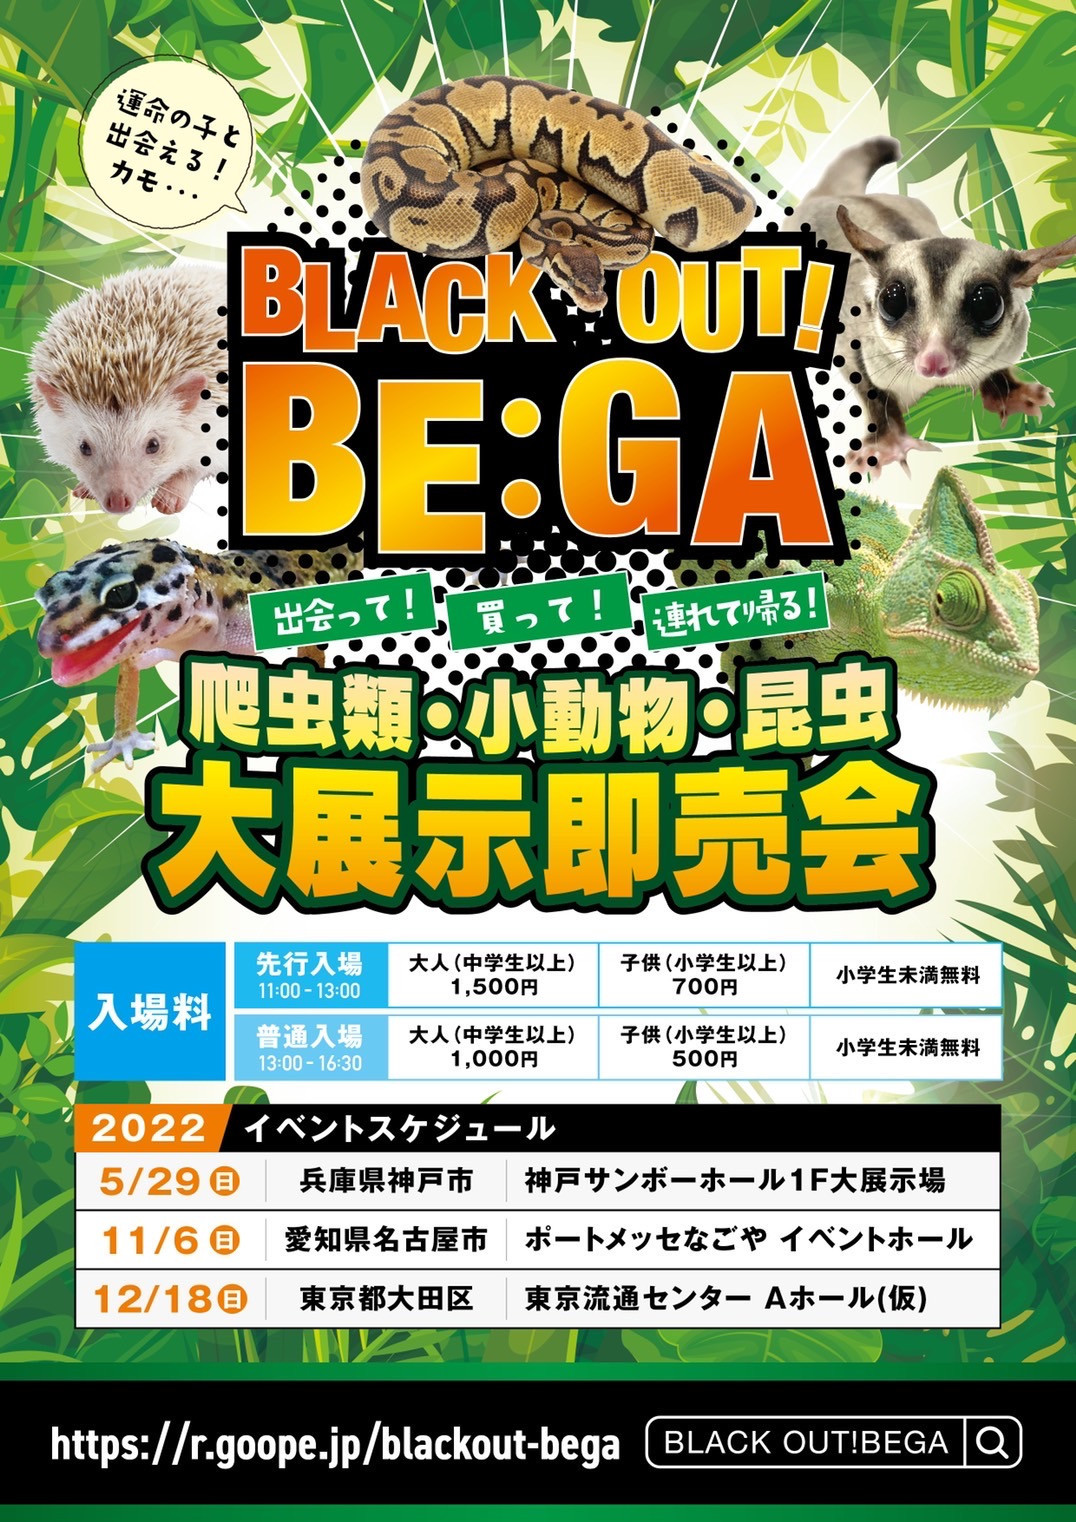 T T Reptiles 5 29 日 神戸で開催のブラックアウトベガに出店致します 会場はぶりくら市でお馴染みの神戸サンボーホールになります 次回のイベントまで間がありますので今回イベント特価と致しまして表示価格より10 30 のイベント割引を行います 個体